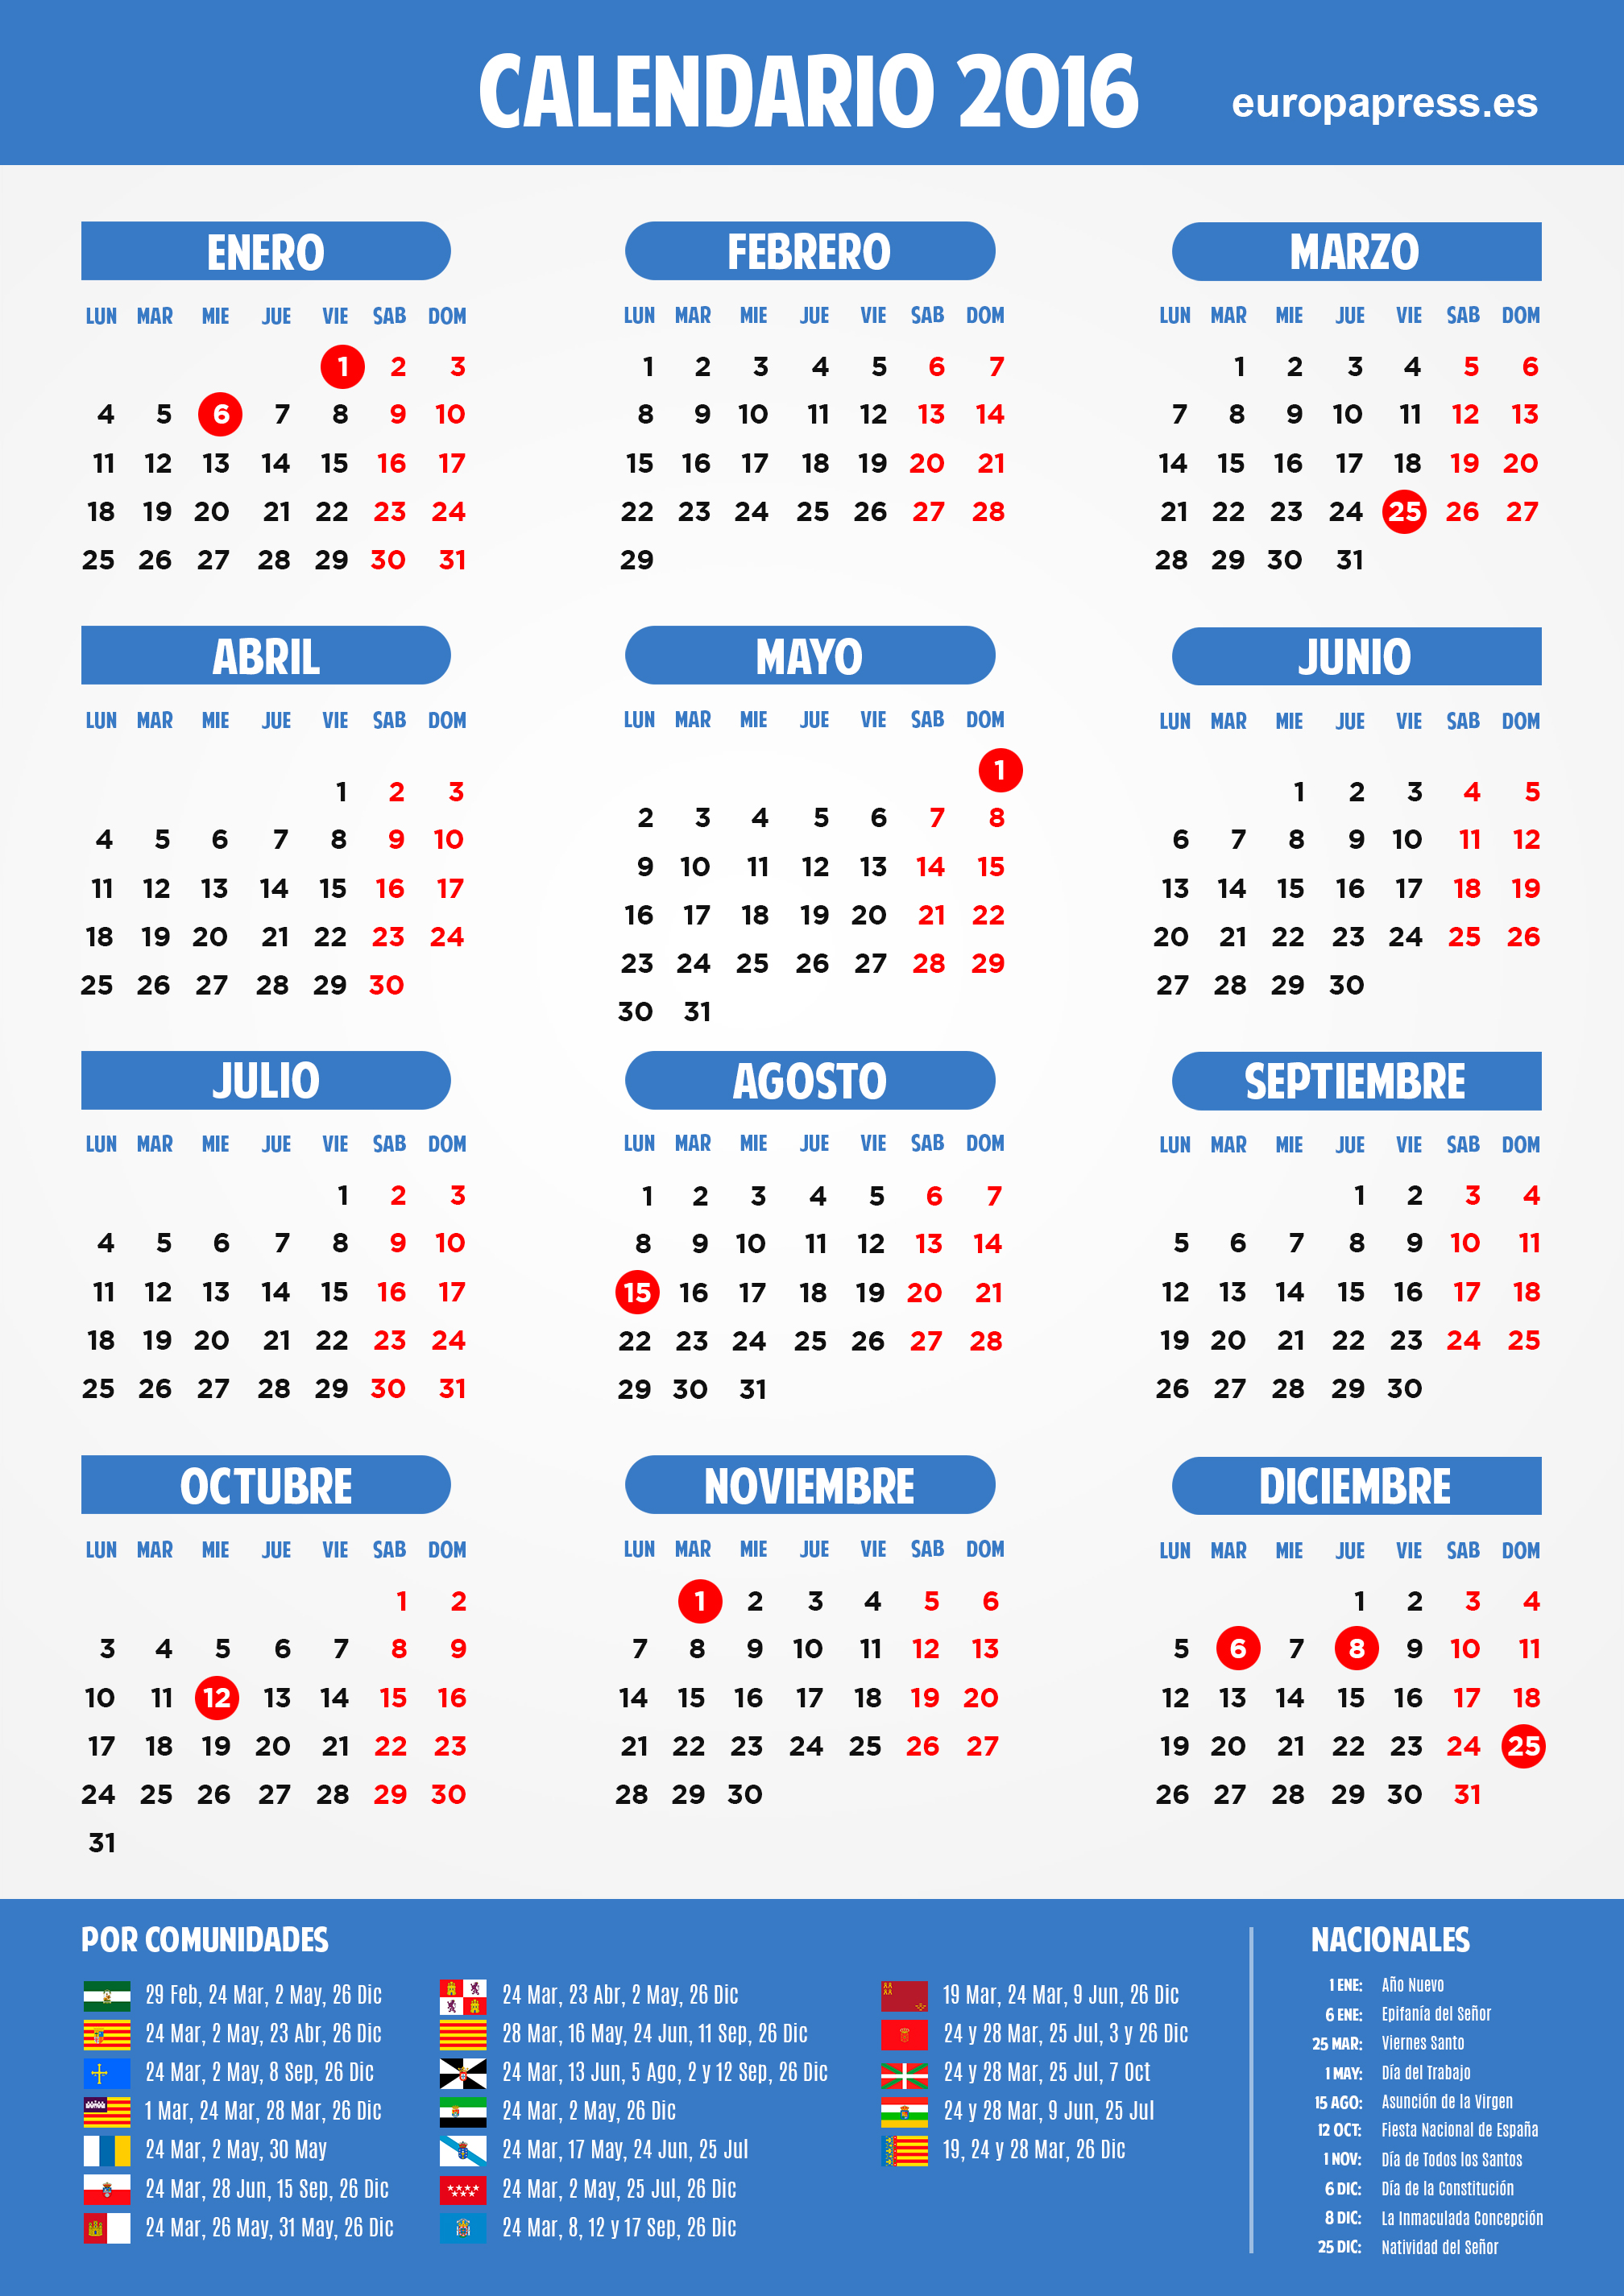 Calendario Laboral 2016